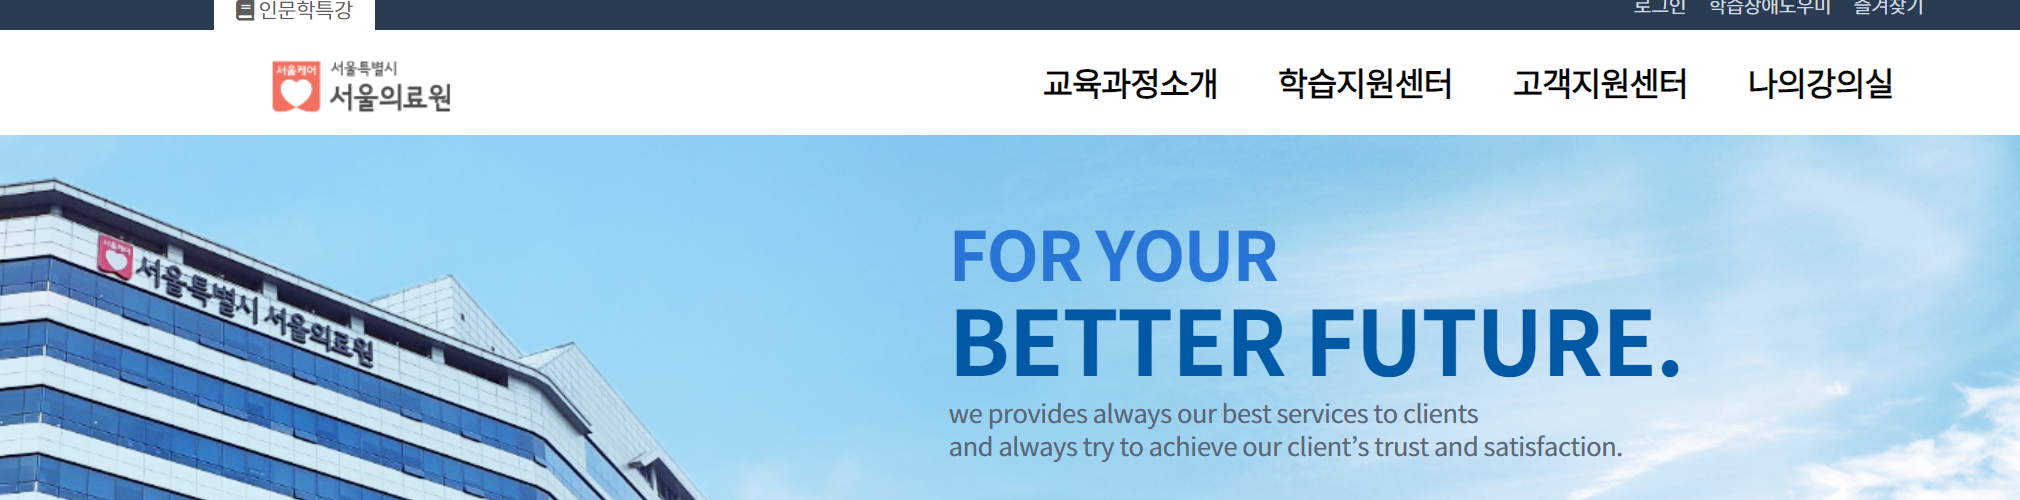 서울의료원 기업연수원 홈페이지 메인 상단 모습